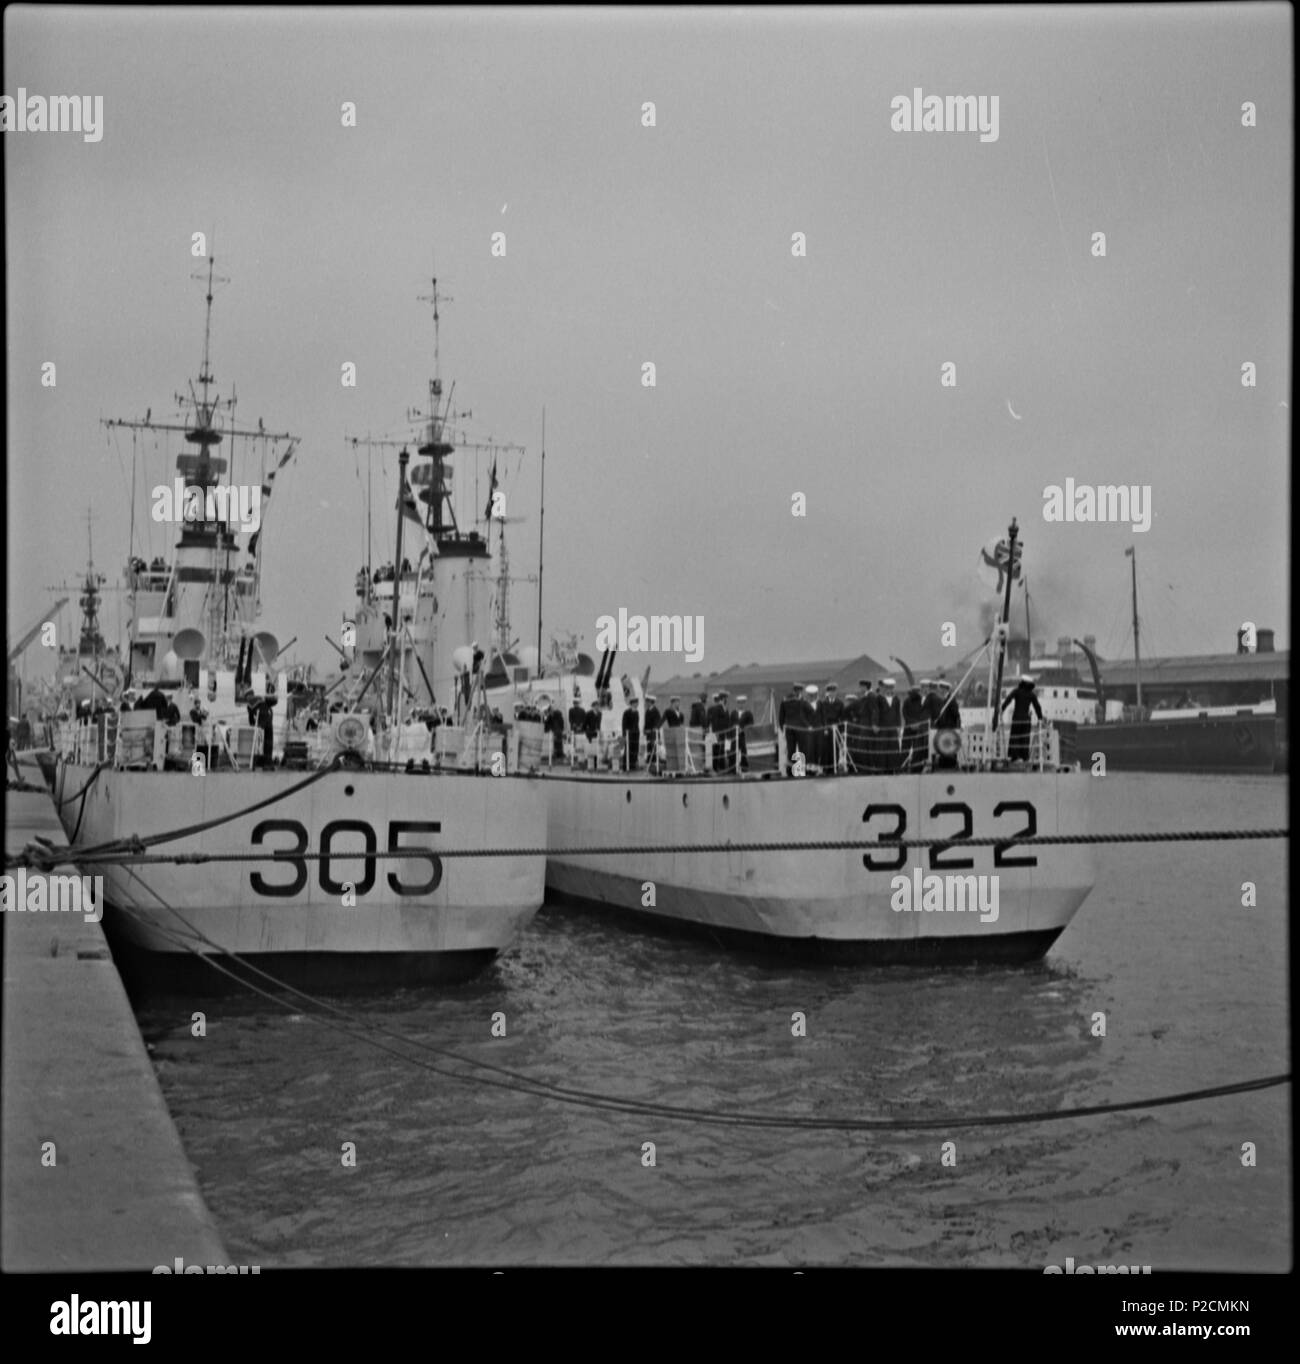 . Due navi ancorate, Parete Sud, Co. Dublino. Questo è il Reale Marina canadese (RCN) durante una visita a Dublino nel 1962, 322 fu la HMCS Lauzon e 305 La Hulloise. C'erano 4 navi in totale con oltre 700 marinai. Tutte le informazioni di cui sopra è stata fornita da [/foto/129555378@N07/ sharon.corbet] e il suo collegamento riportato di seguito per il "Crow's Nest" rivista è veramente vale la pena di leggere, grazie Sharon. Fotografo: James P. O'Dea collezione: James P. O'Dea Data:18 luglio 1962 NLI Rif.: ODEA 31/82 è anche possibile visualizzare questa immagine, e molte altre migliaia di persone, sul NLI del catalogo del catalogo a.nli.ie . 11 ottobre Foto Stock